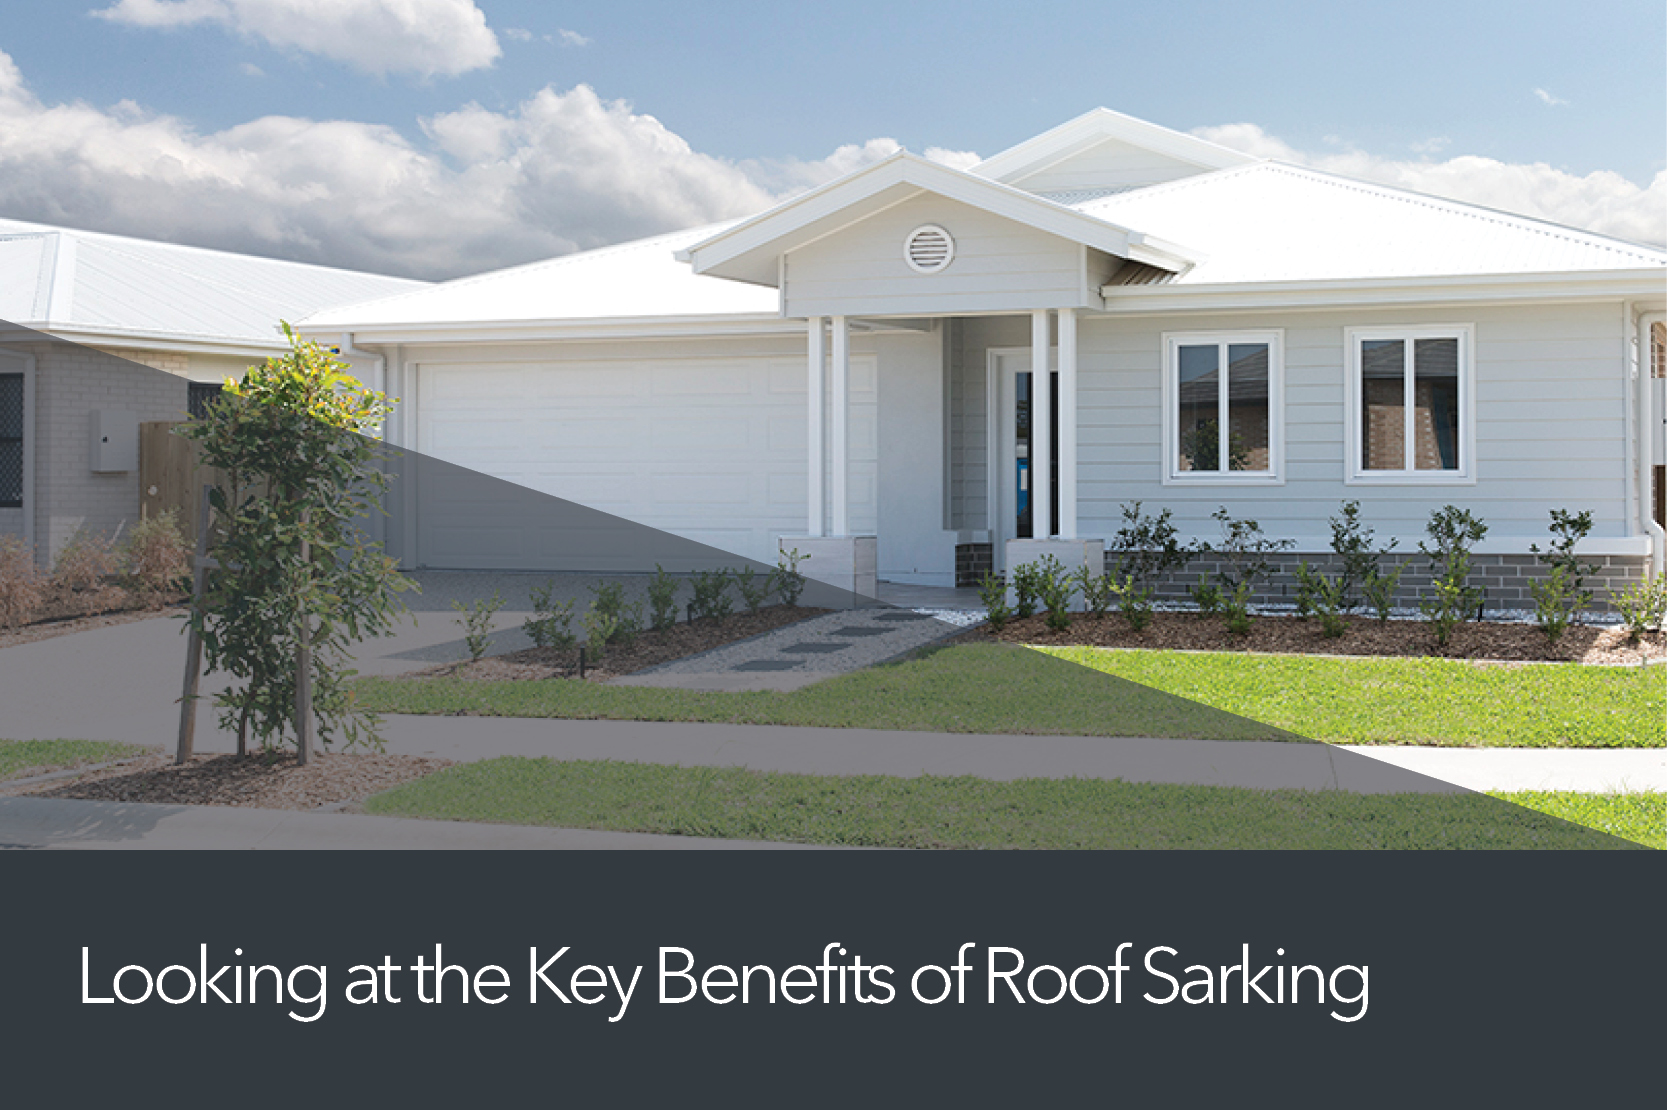 Benefits of Roof Sarking